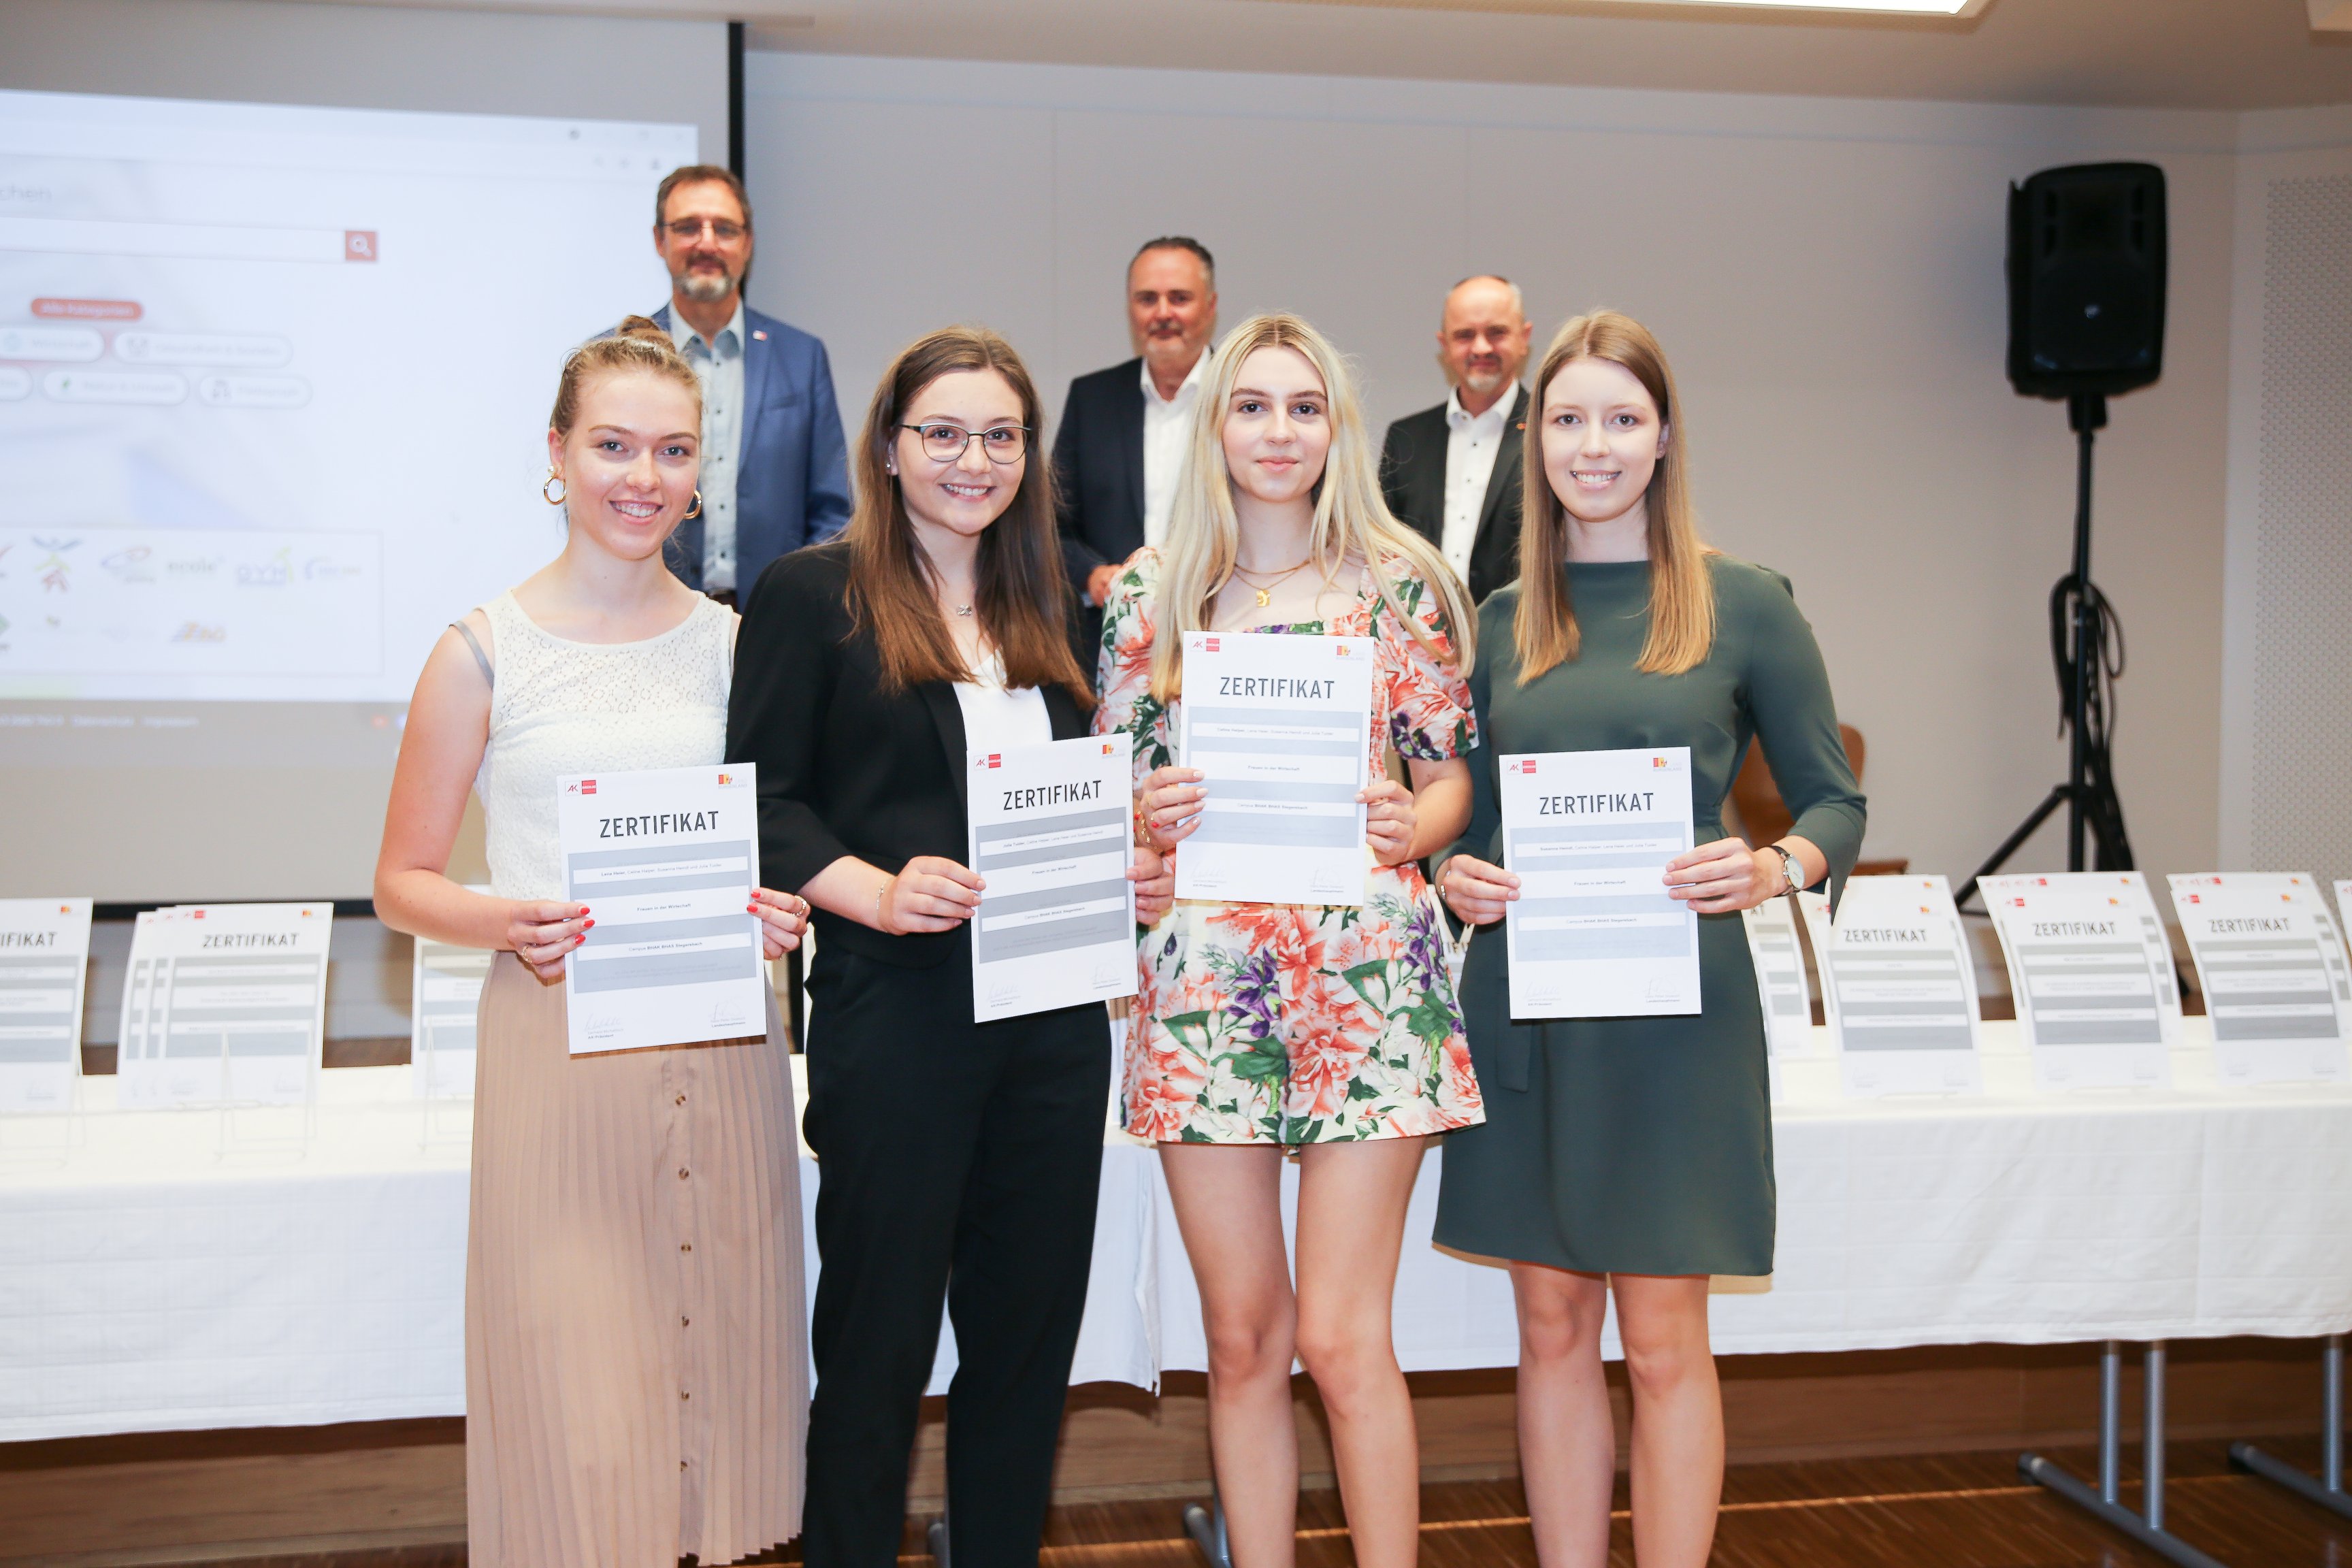 SchülerInnen der Schule "HAK Stegersbach" erhalten Zertifikat für ihre schriftliche Arbeit "Frauen in der Wirtschaft".